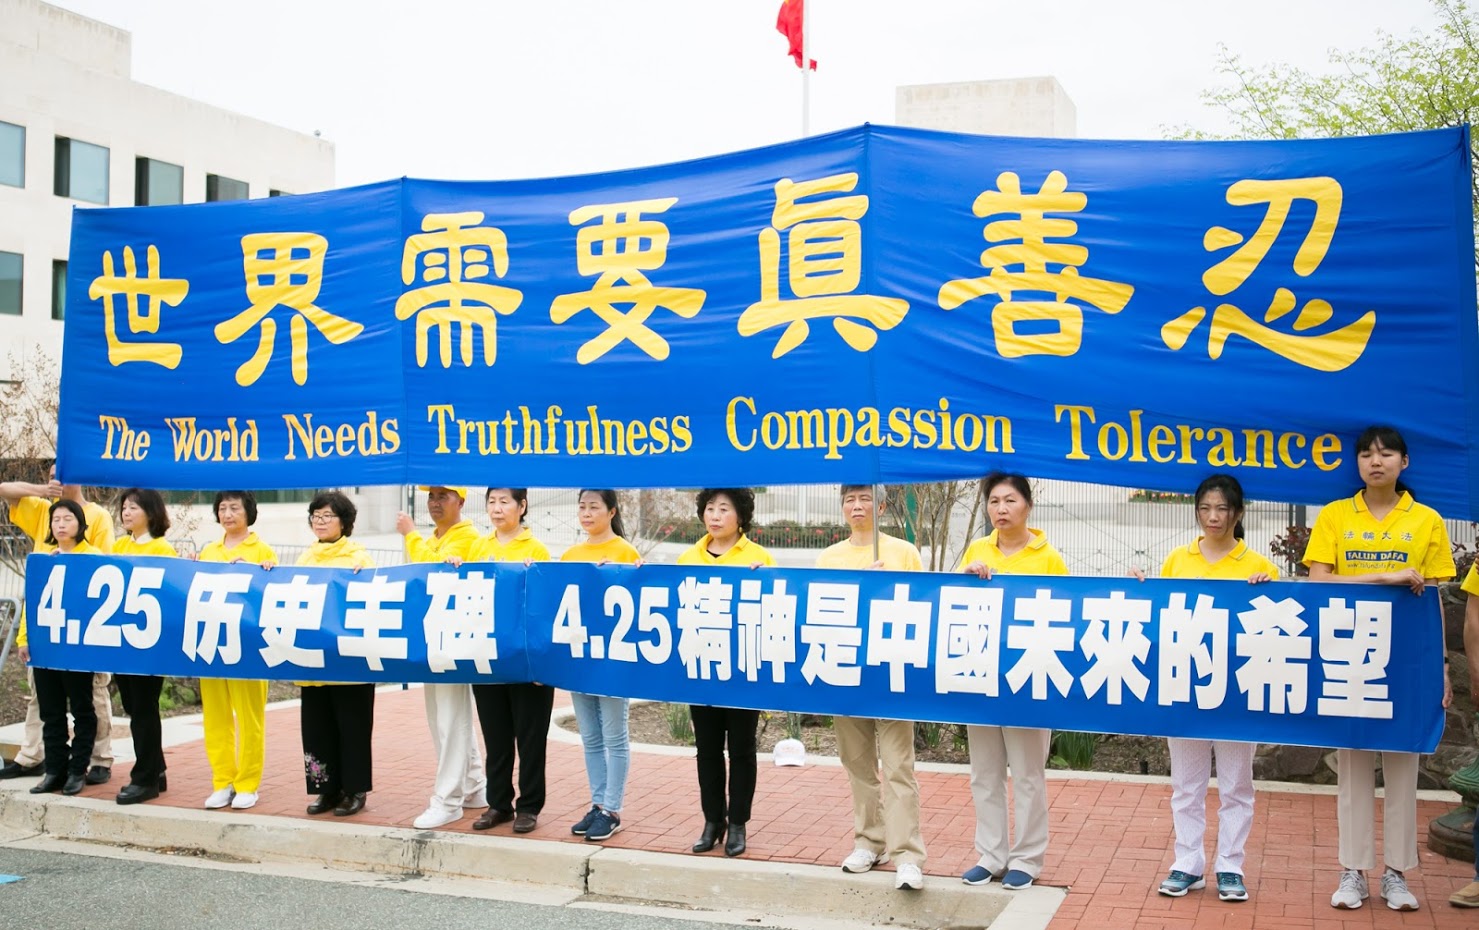 Image for article Un rassemblement à Washington, D.C. demande la fin de la persécution qui dure depuis 20 ans en Chine